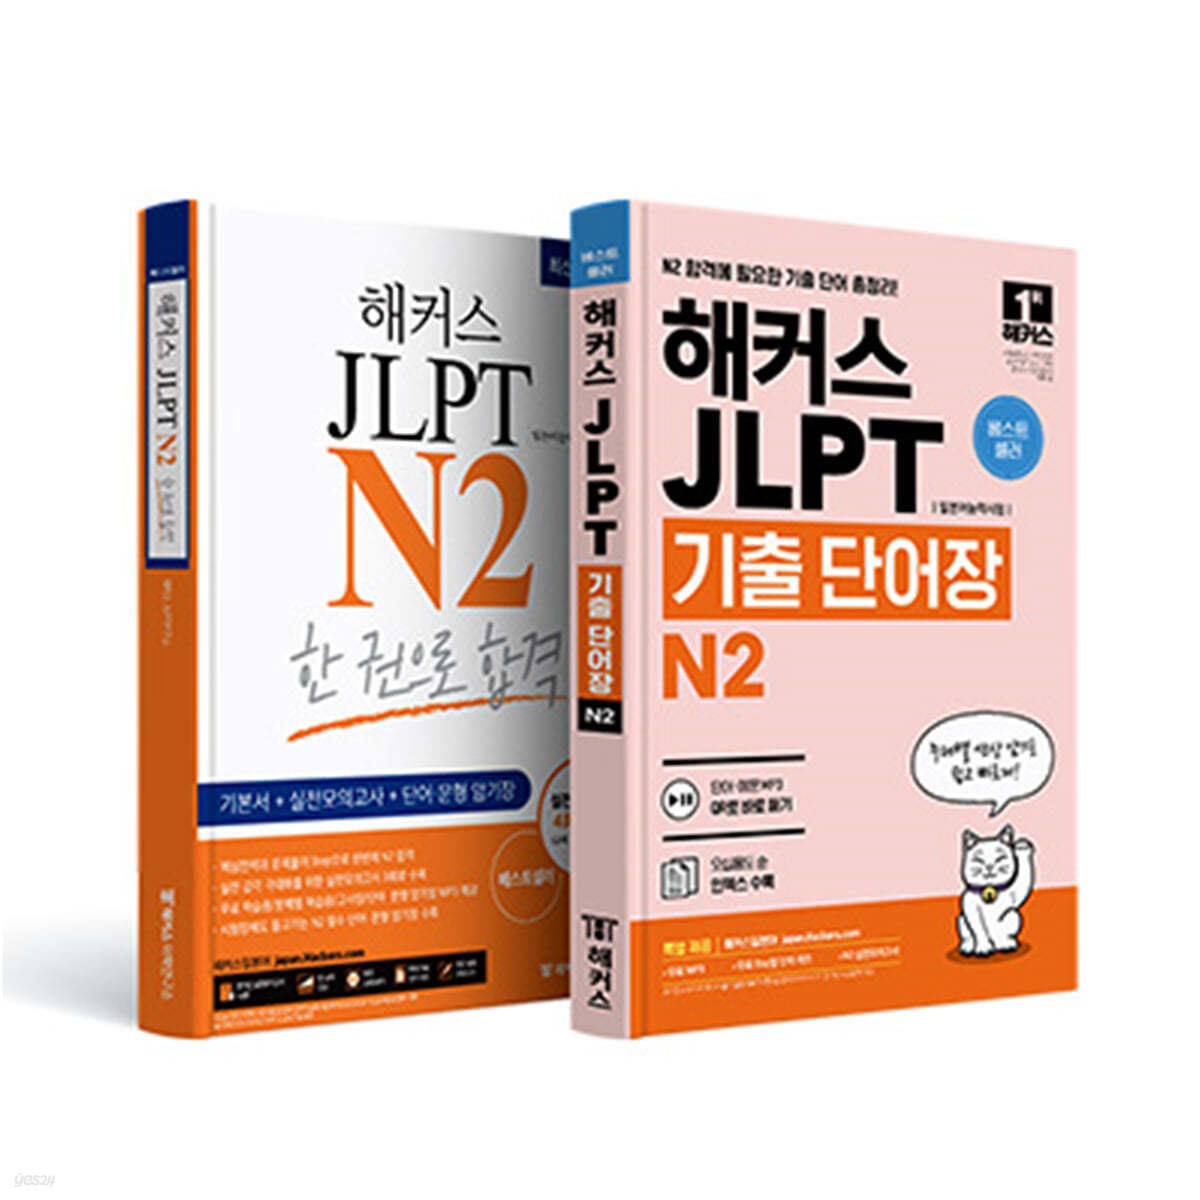 해커스일본어 JLPT 일본어능력시험 N2 기본서 + N2 기출 단어장 세트